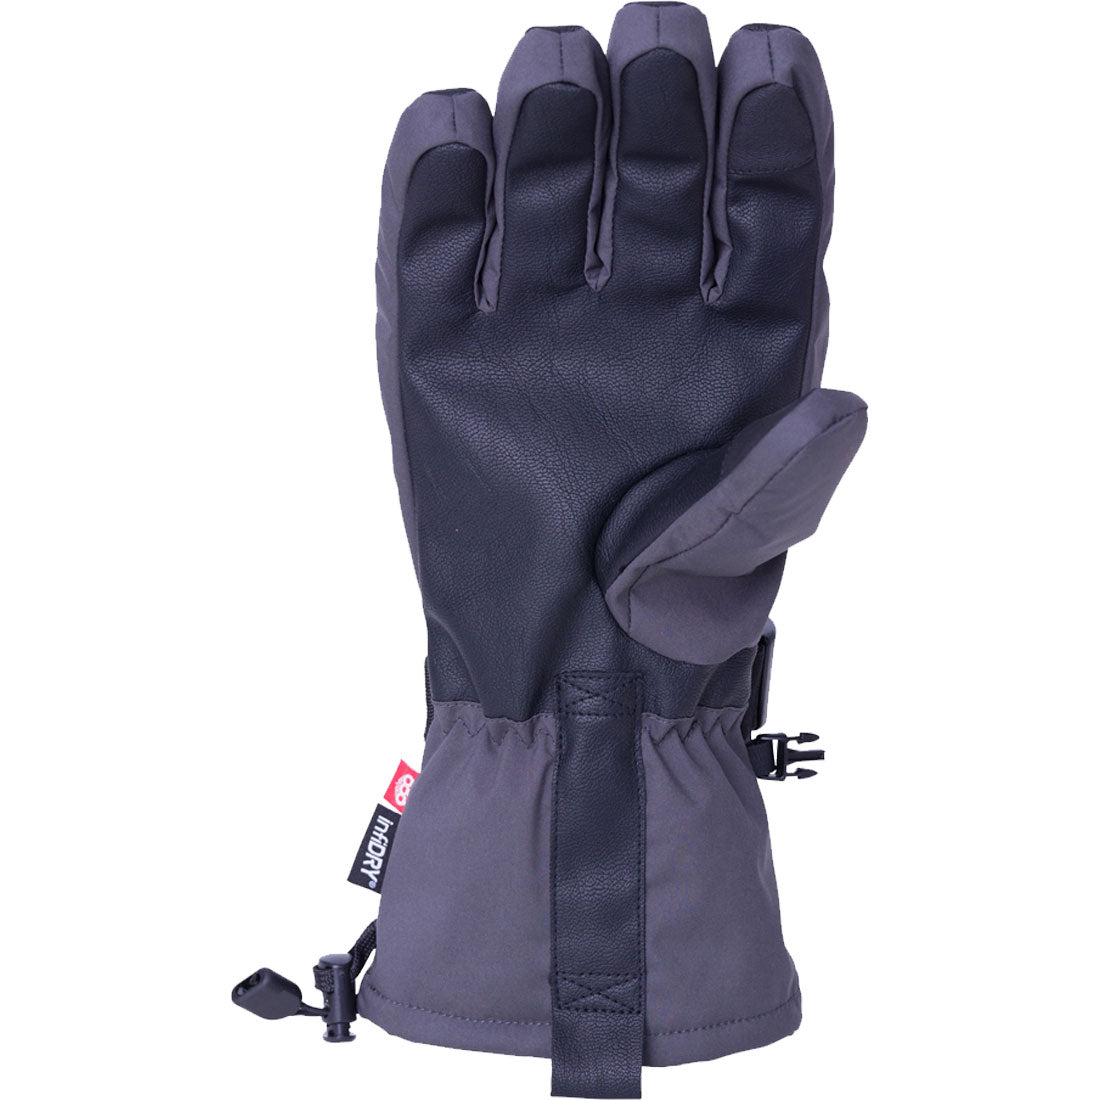 686 Vortex Glove - Men's